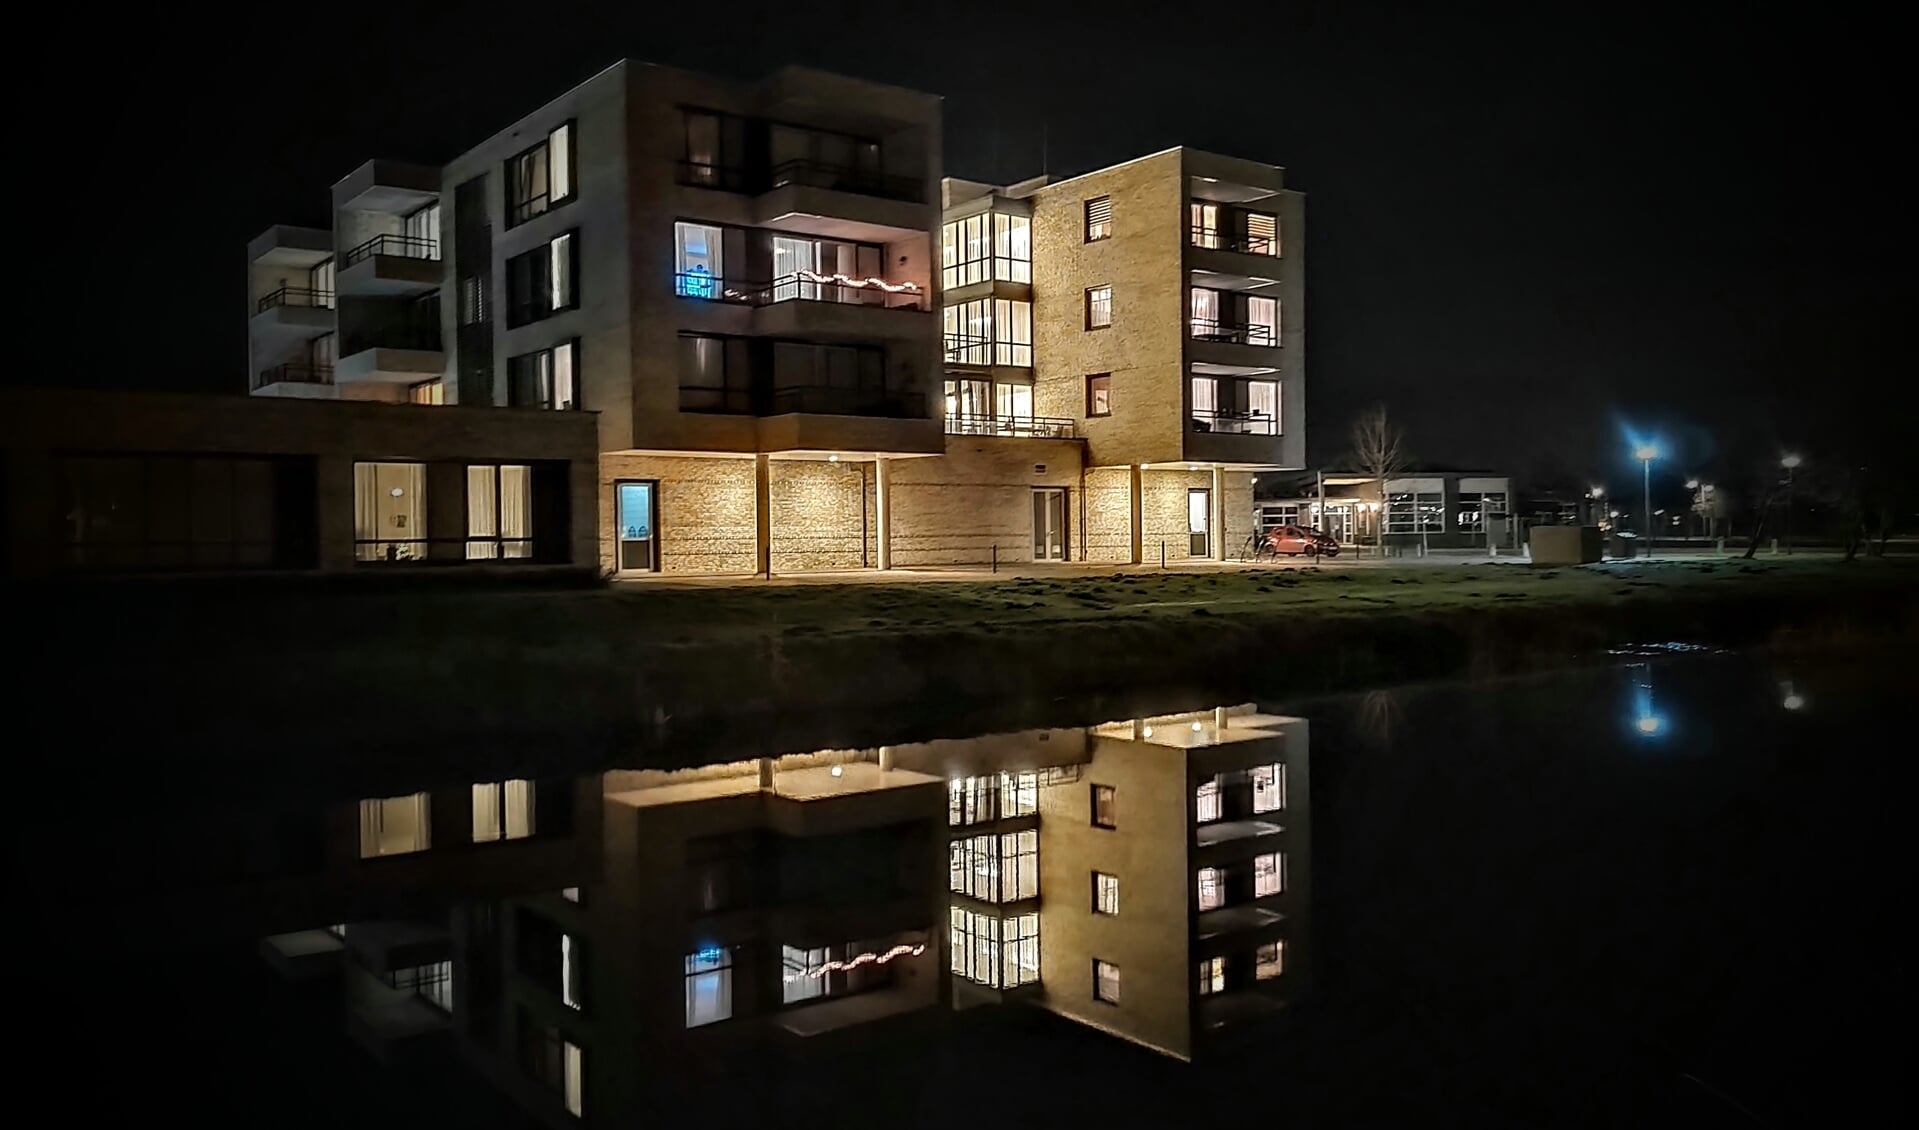 Careaz/Sius Hof van Flierbeek in Lichtenvoorde. Foto: Paul van Druten